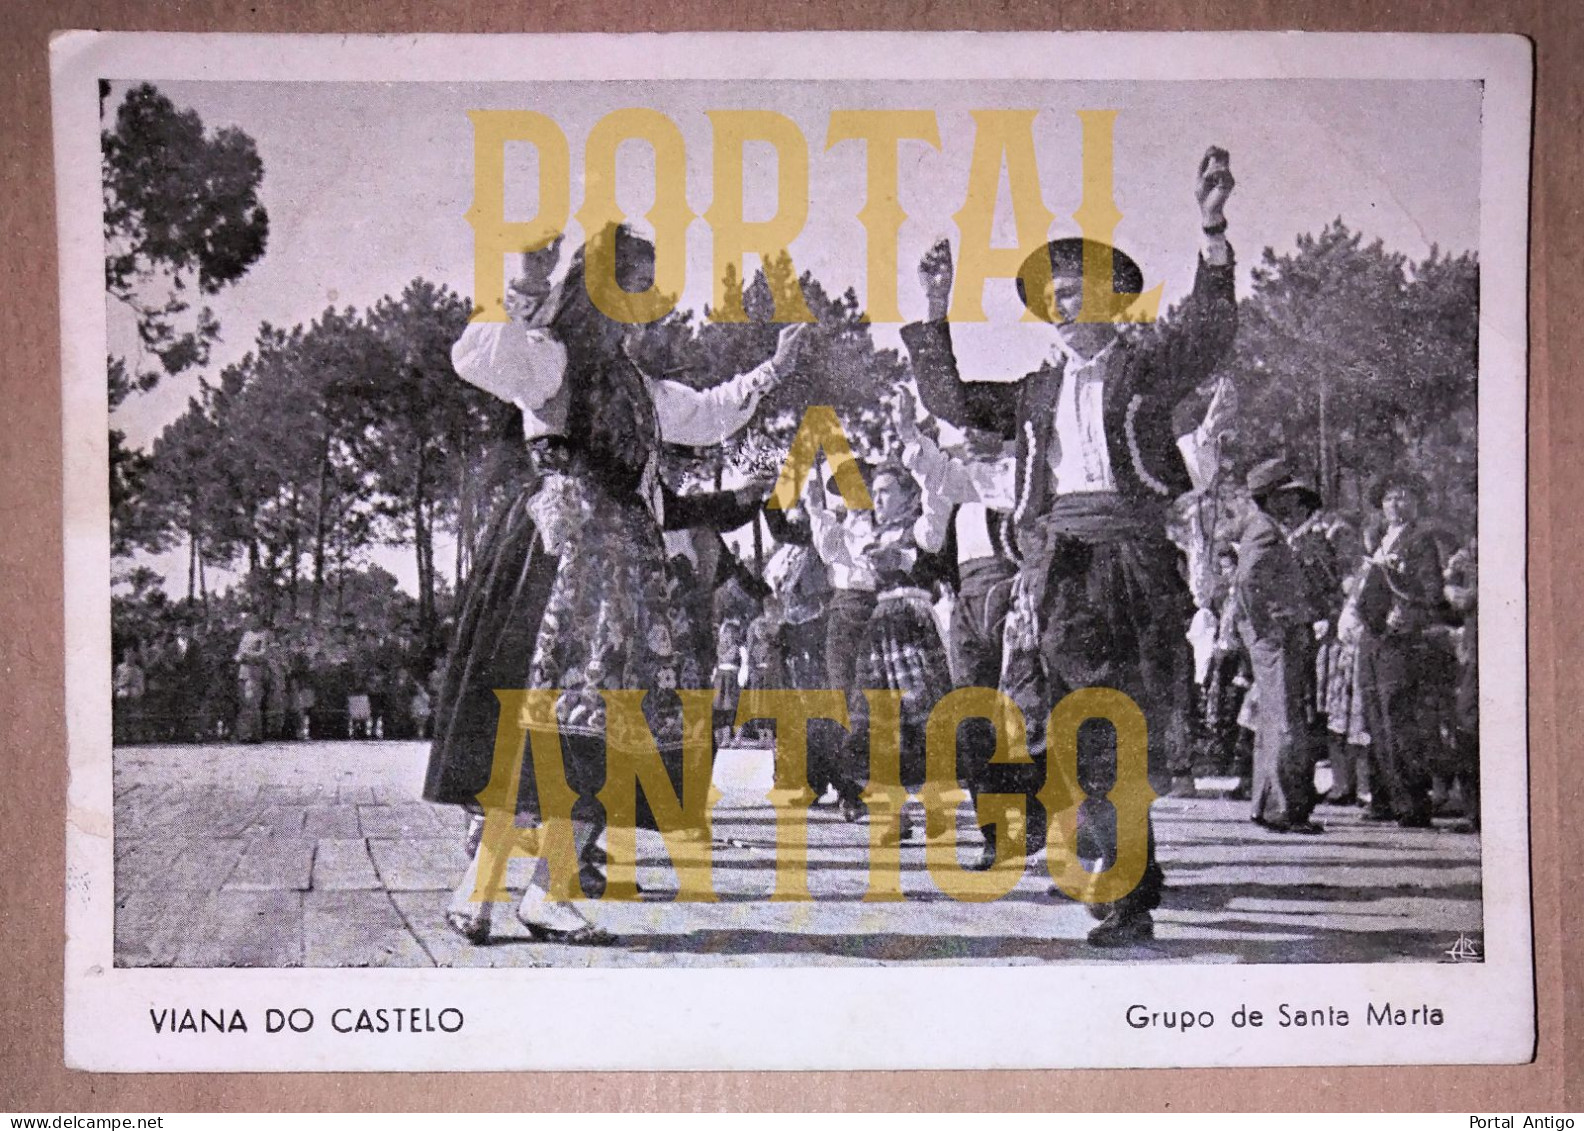 VIANA DO CASTELO * GRUPO DE SANTA MARIA * COSTUMES E TRADIÇÕES * DANÇAS * PORTUGAL (Circulado 1954 * 2 Scans) - Viana Do Castelo